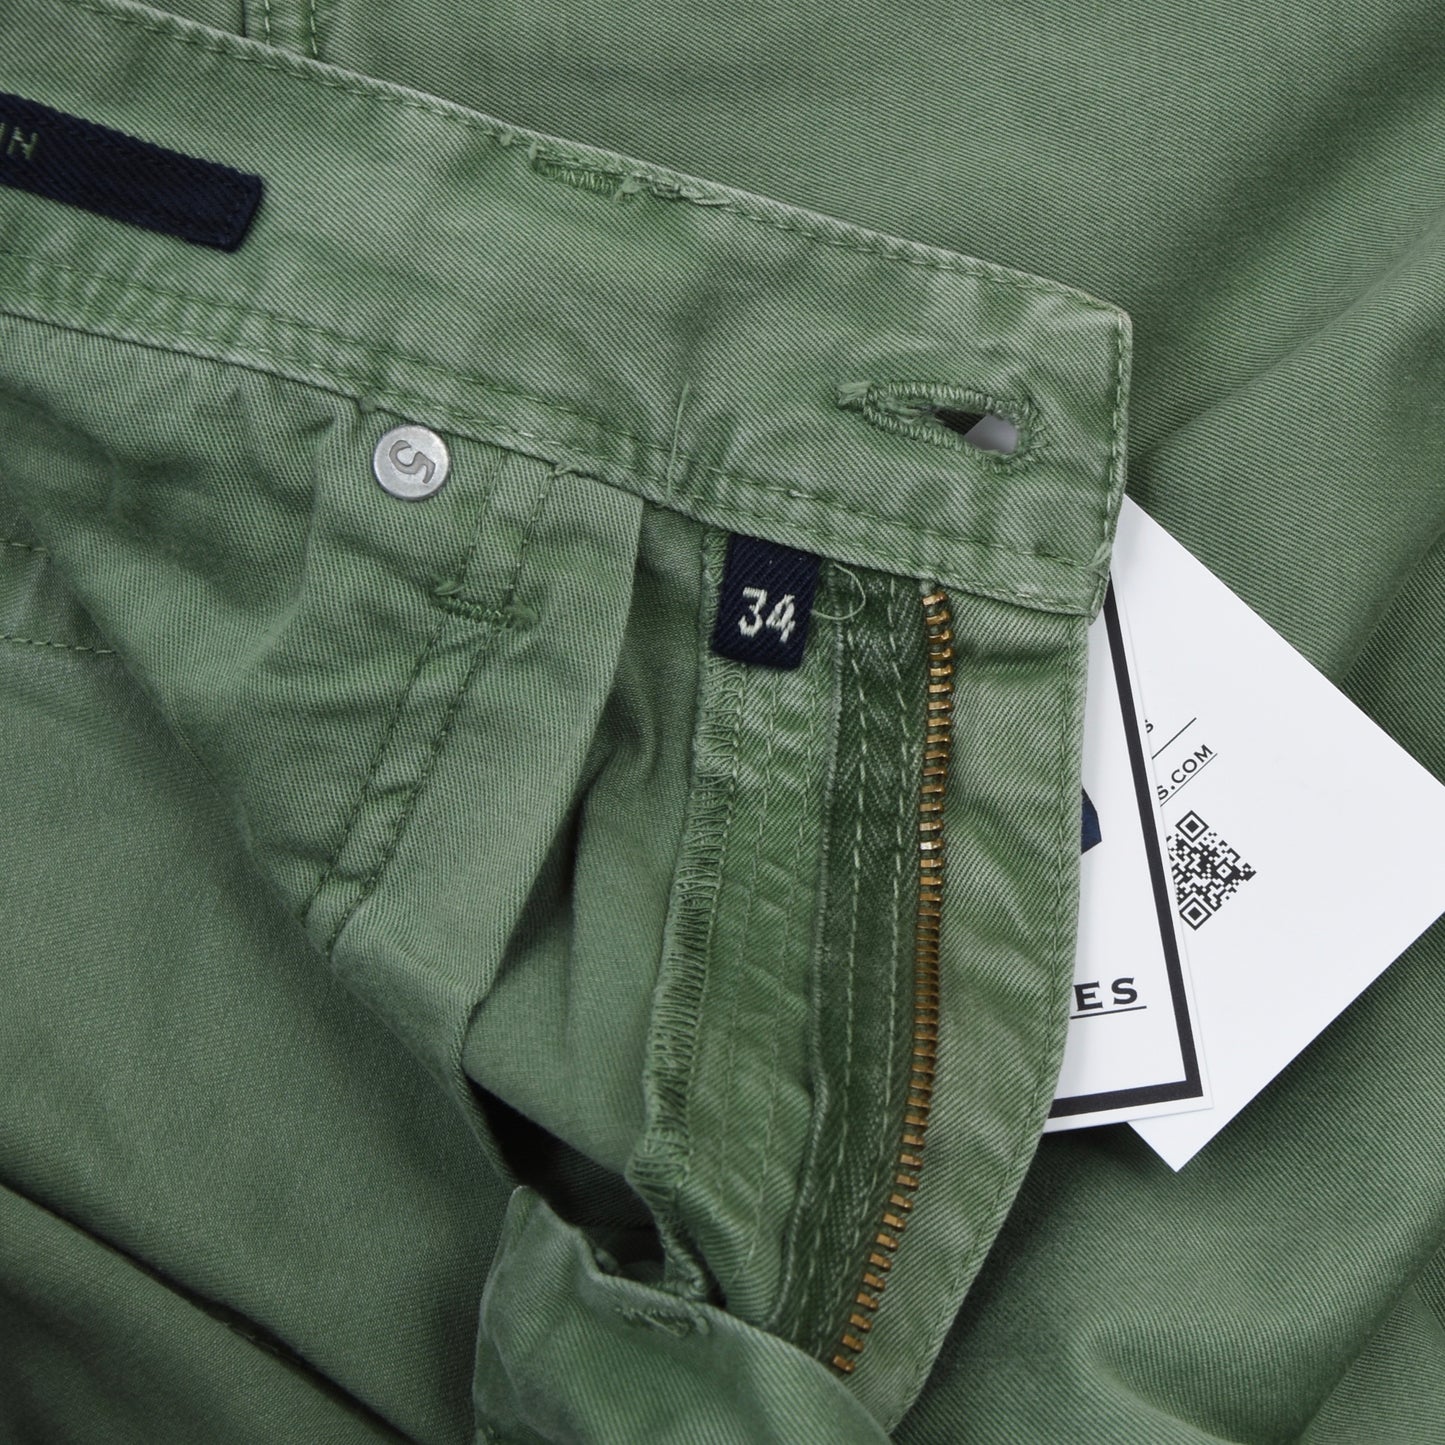 Incotex 5 Pocket Cotton Pants Size 34 - Green